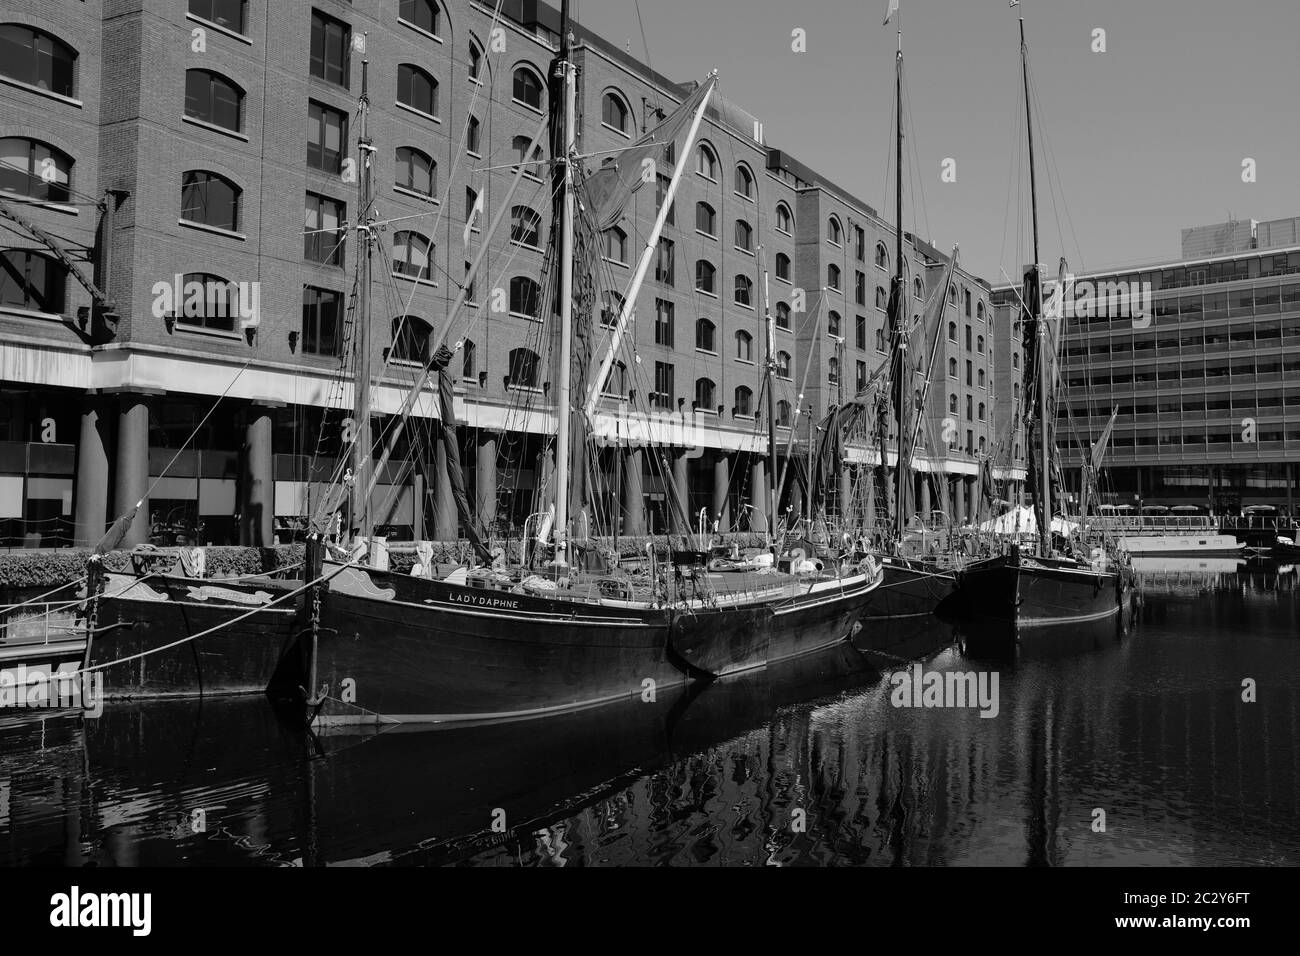 Traditionelle Segelschiffe in St. Katherine Dock London UK mit Hintergrund von original umgebauten Lagerhäusern. Bild in schwarz-weiß. Stockfoto